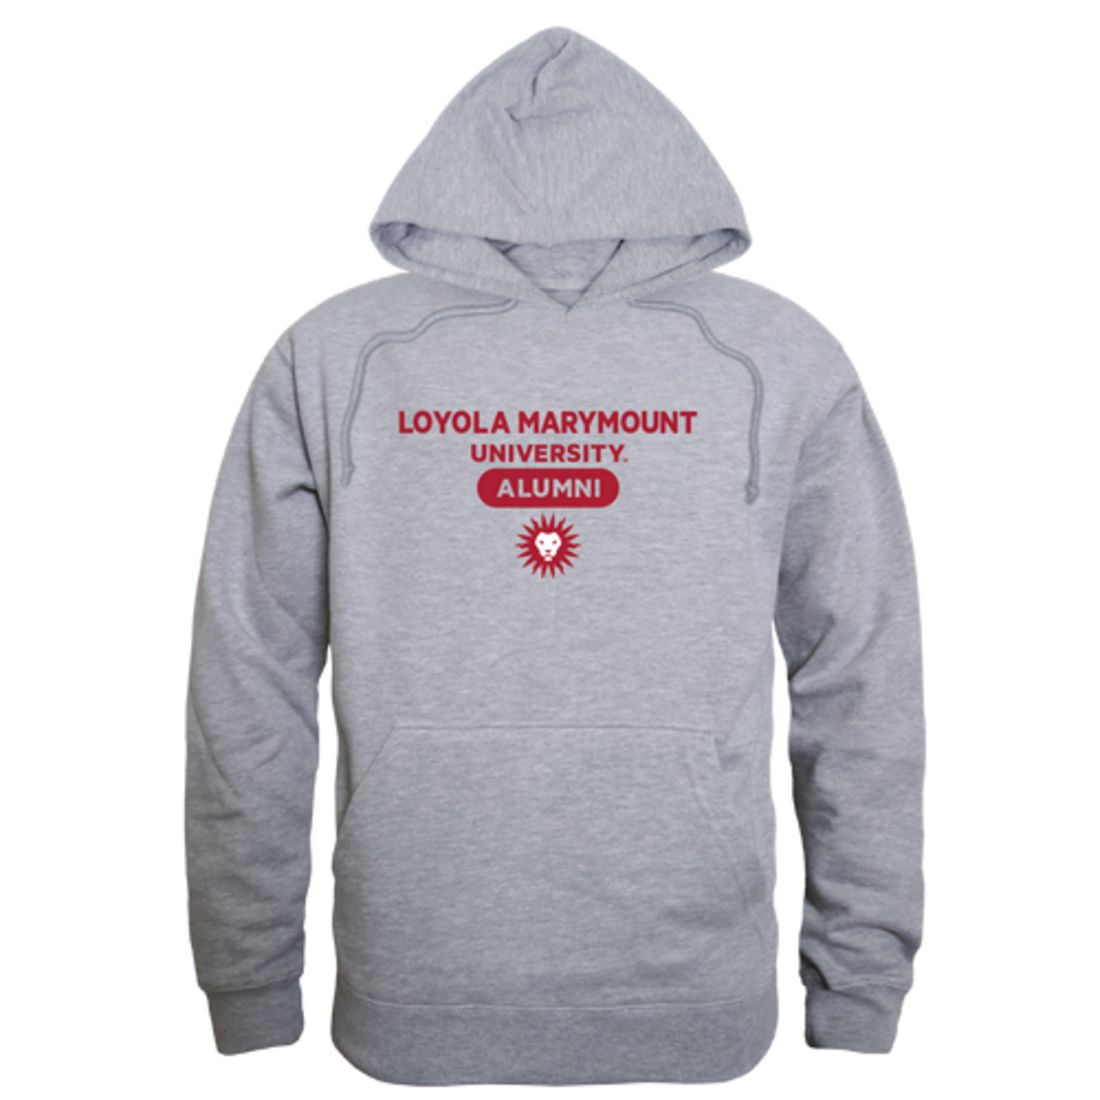 LMU Loyola Marymount University Lions Alumni Fleece Hoodie Sweatshirts Heather Charcoal-Campus-Wardrobe